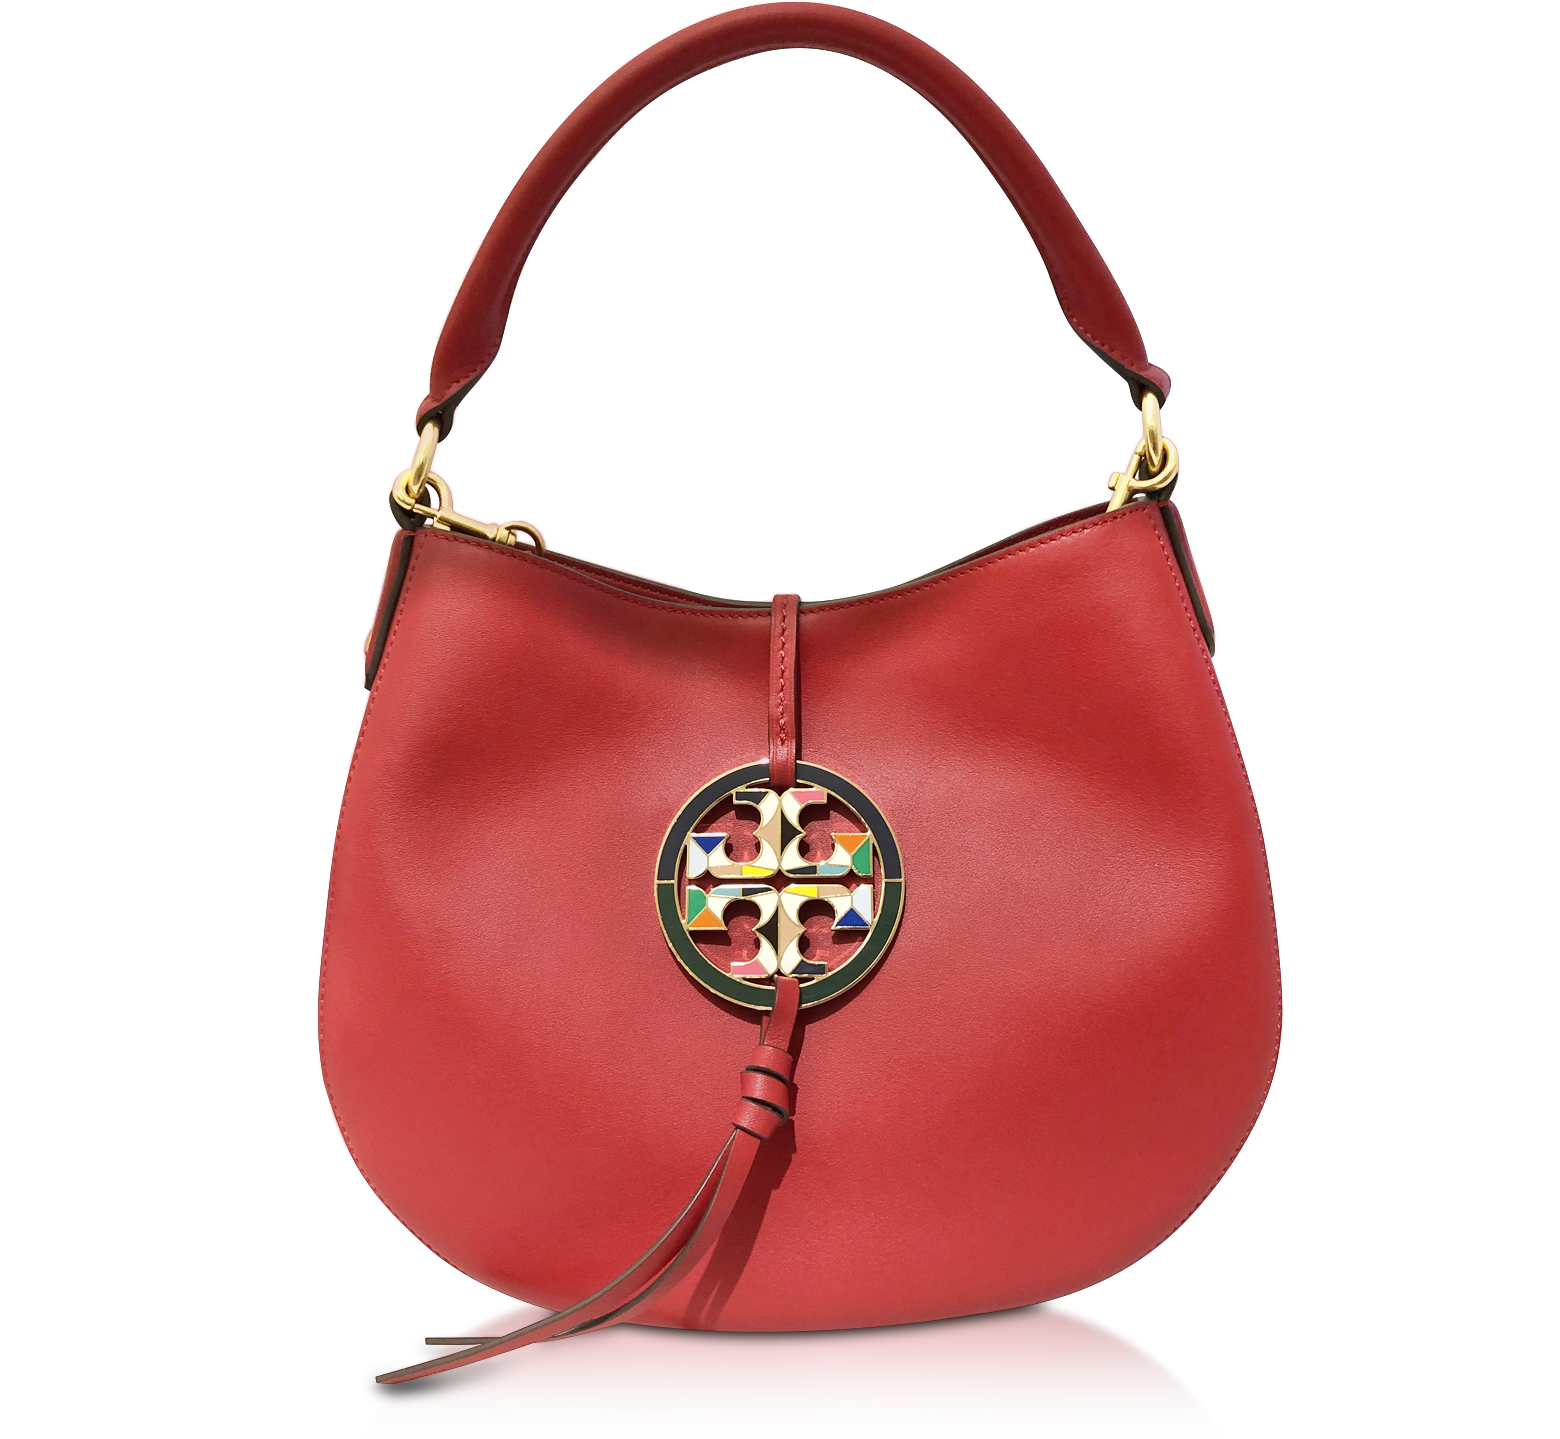 Tory Burch Hobo Bags Red Bags & Handbags for Women